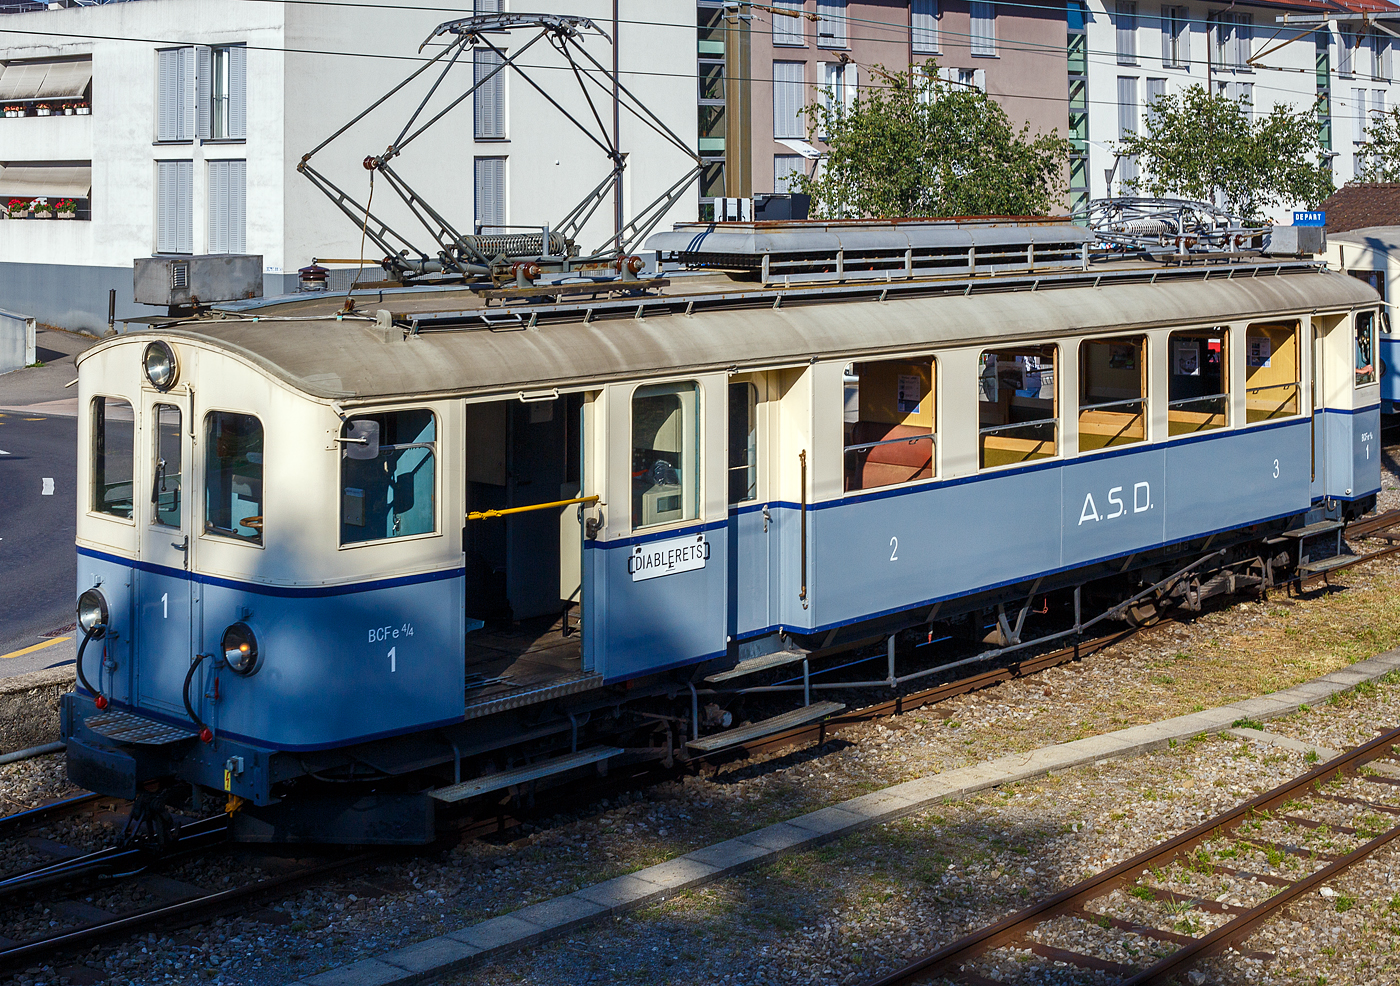 Als Ergänzung zu Stefan schönem Bild
Auch bei der Museumsbahn Blonay–Chamby wurde das „125-Jahr-Jubiläum“ der Linie Bex-Villars (später BVB) gefeiert („Le Chablais en fête“).  

Der elektrische Personentriebwagen mit Gepäckabteil A.S.D. BCFe 4/4 No.1 «TransOrmonan» der TPC am 9 September 2023 im Bahnhof Blonay, als Gastfahrzeug der TPC zu Besuch bei der BC.

Der Triebwagen wurde 1913 als BCZe 4/4 Nr.1 (Personentriebwagen mit Postabteil) von der SWS (Schweizerische Wagons- und Aufzügefabrik AG) in Schlieren gebaut, die erste elektrische Ausrüstung von der AEG (Allgemeine Elektricitäts-Gesellschaft, Berlin), und an die Aigle-Sépey-Diablerets-Bahn (ASD) geliefert. Um 1935 wurde das Postabteil durch ein Gepäckabteil ersetzt so war dann die neue Bezeichnung ASD BCFe 4/4 Nr. 1.

Am 26. Juni 1940 zerstörte ein Großbrand im Depot Aigle drei der fünf Triebwagen und vier von fünf Personenwagen. Damit wäre das Schicksal der Aigle-Sépey-Diablerets-Bahn wohl besiegelt gewesen, hätten nicht die Montreux-Berner Oberland-Bahn (MOB) und die Chemins de fer électriques Veveysans (CEV) die geschädigte Bahngesellschaft mit je einem Personenwagen unterstützt. 

So wurde der angeschlagene Triebwagen BCFe 4/4 – 1 bei SWS 1941 neuaufgebaut, mit dem Neuaufbau erhielten die Fahrzeuge eine neue elektrische Ausrüstung, diese kam nun aber von der BBC (Brown Boveri et Cie, Baden), zudem wurden nun Druckluftbremsen statt Vakuumbremsen eingebaut. Im Jahr 1956 gab es dann noch einen Klassenwechsel, somit neue Bezeichnung ASD ABDe 4/4 – 1. Der Triebwagen war bis 1987 bei der ASD im Plandienst.

TECHNISCHE DATEN:
Baujahr: 1913 / 1941 Neuaufbau
Spurweite: 1.000 mm
Achsformel: Bo’Bo’
Wagenkastenmaterial: Stahl
Länge über Puffer: 15.460 mm
Drehzapfenabstand: 8.700 mm
Achsabstand im Drehgestell: 2.100 mm
Breite: 2.700 mm
Eigengewicht: 25 t (ursprünglich 25,1)
Höchstgeschwindigkeit: 50km/h (ursprünglich 25 km/h)
Leistung: 240 kW (ursprünglich 148 kW)
Stromsystem: 1500 Volt DC (Gleichstrom)
Elektrische Ausrüstung: Schützensteuerung
Sitzplätze: 40 (8 in der 2. und 32 in der 3. Klasse)
